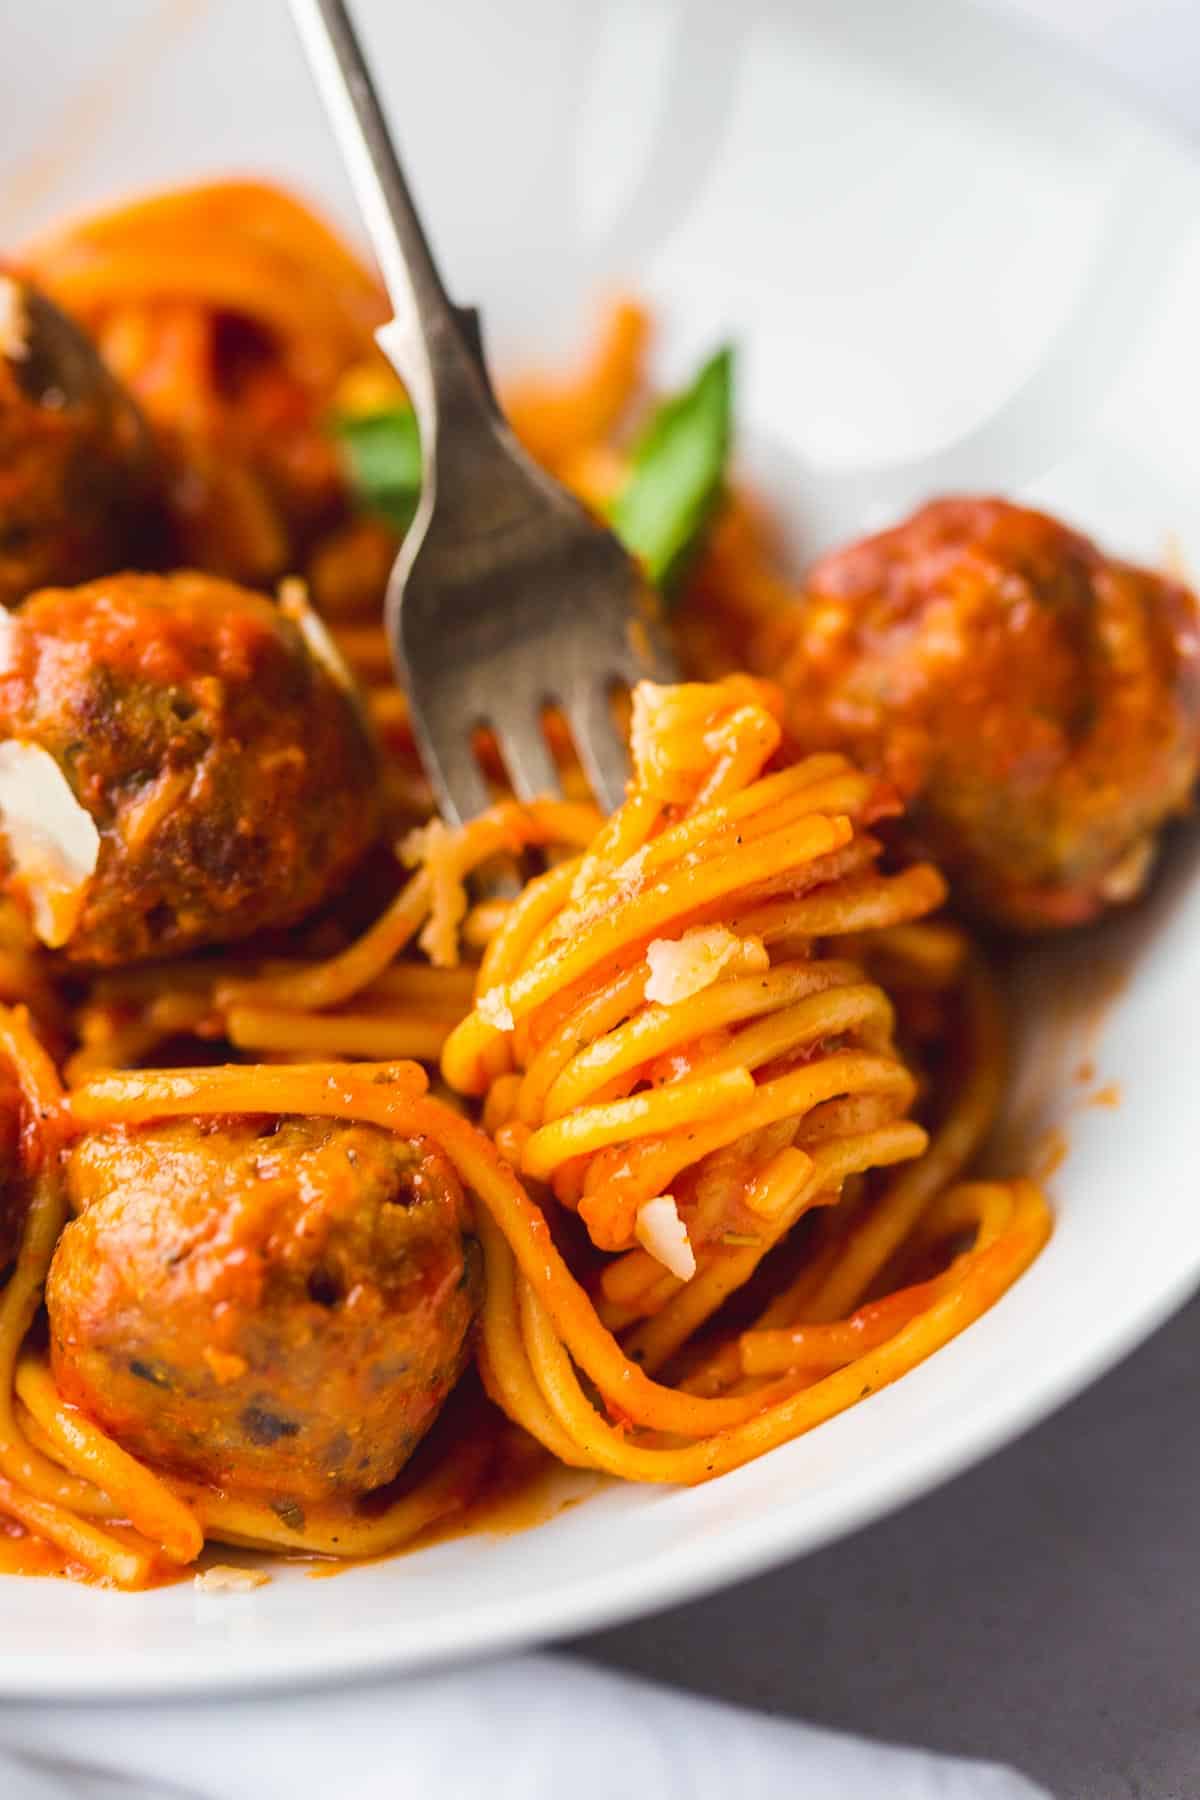 Spaghetti and Meatballs in tomato sauce